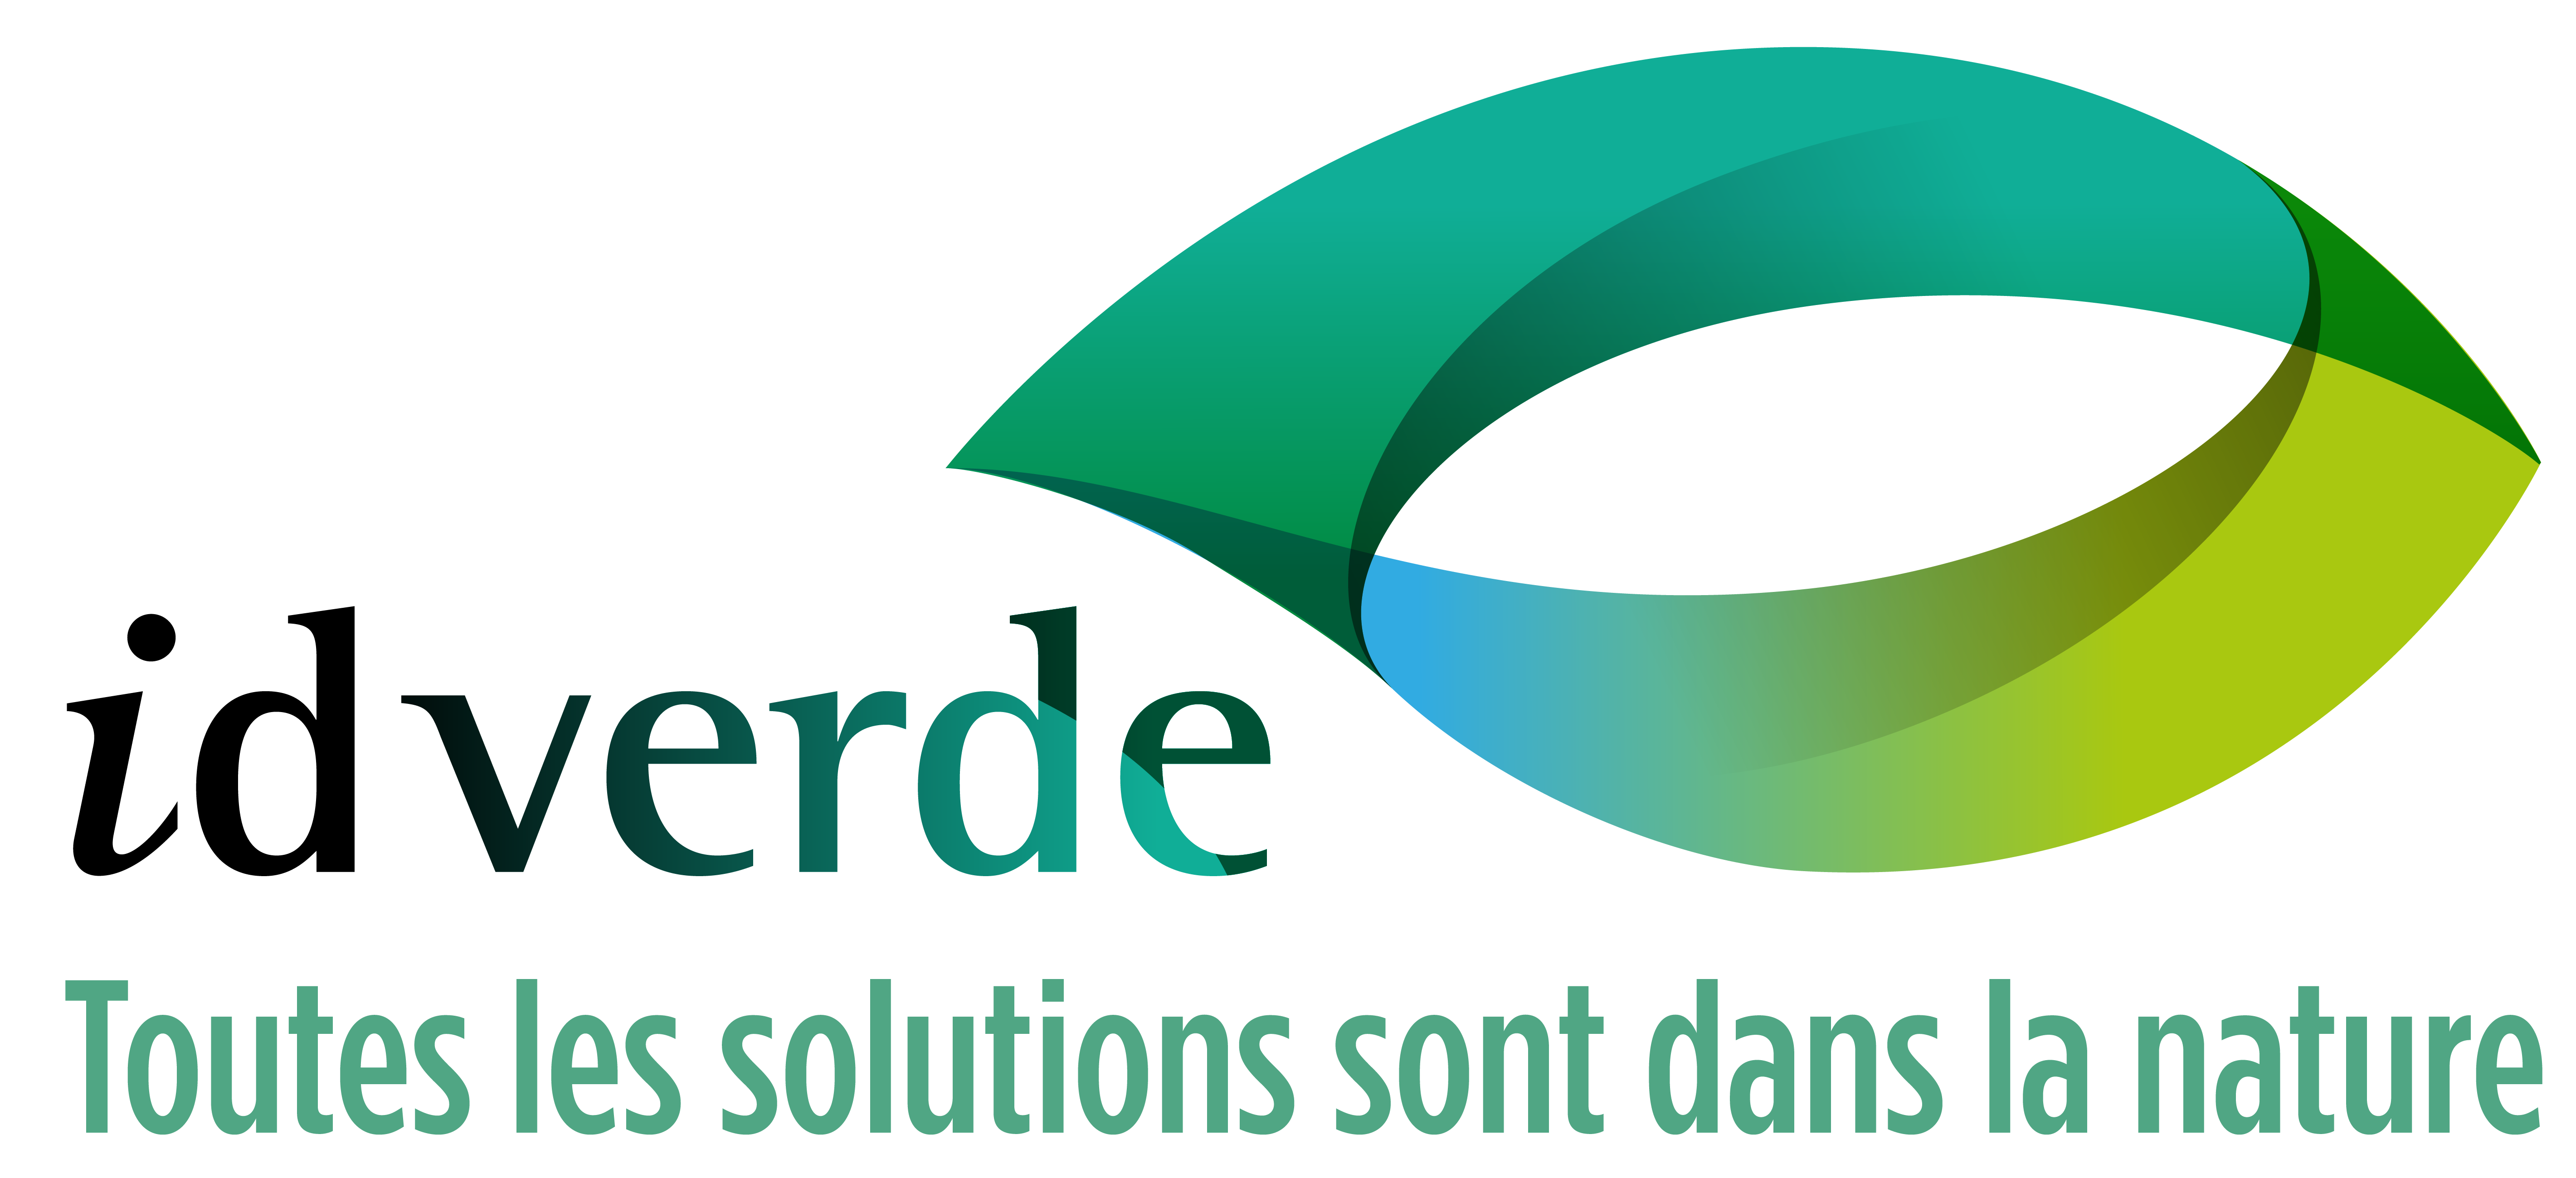 idverde, leader français et européen du paysage, publie son rapport RSE 2023